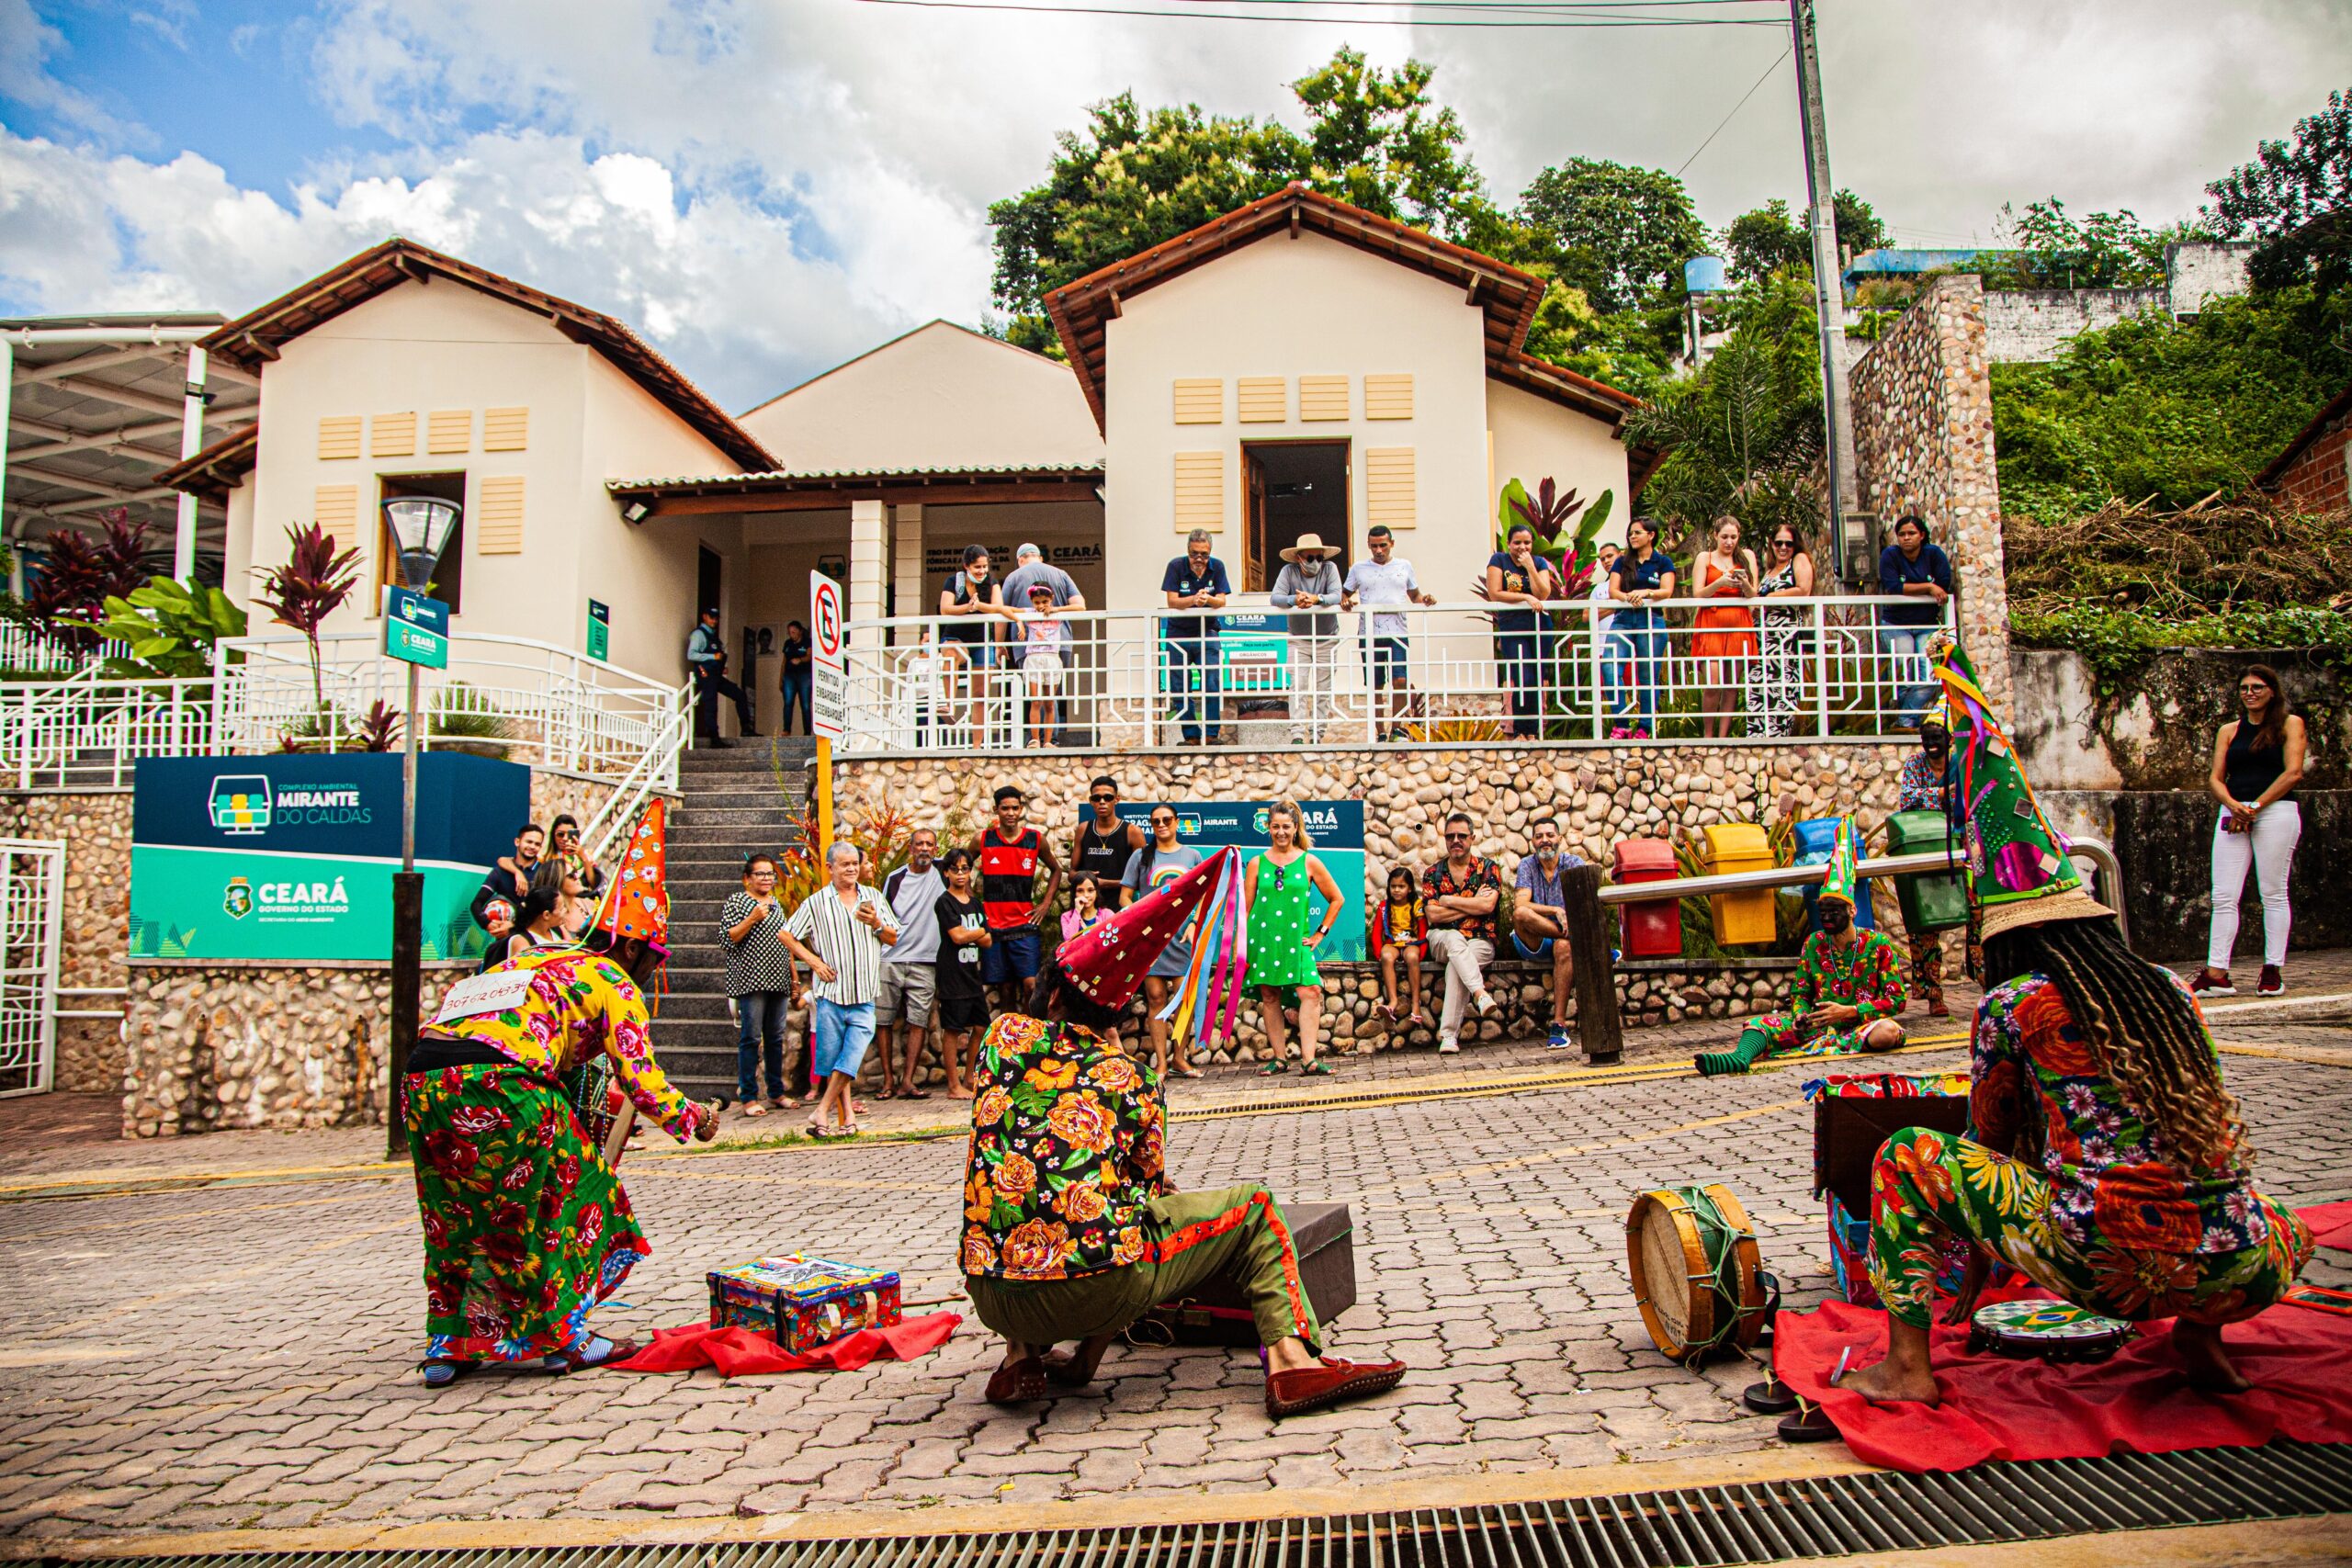 Foto de apresentação de grupo de tradição cearense em frente ao Complexo Ambiental Mirante do Caldas, no cariri cearense.